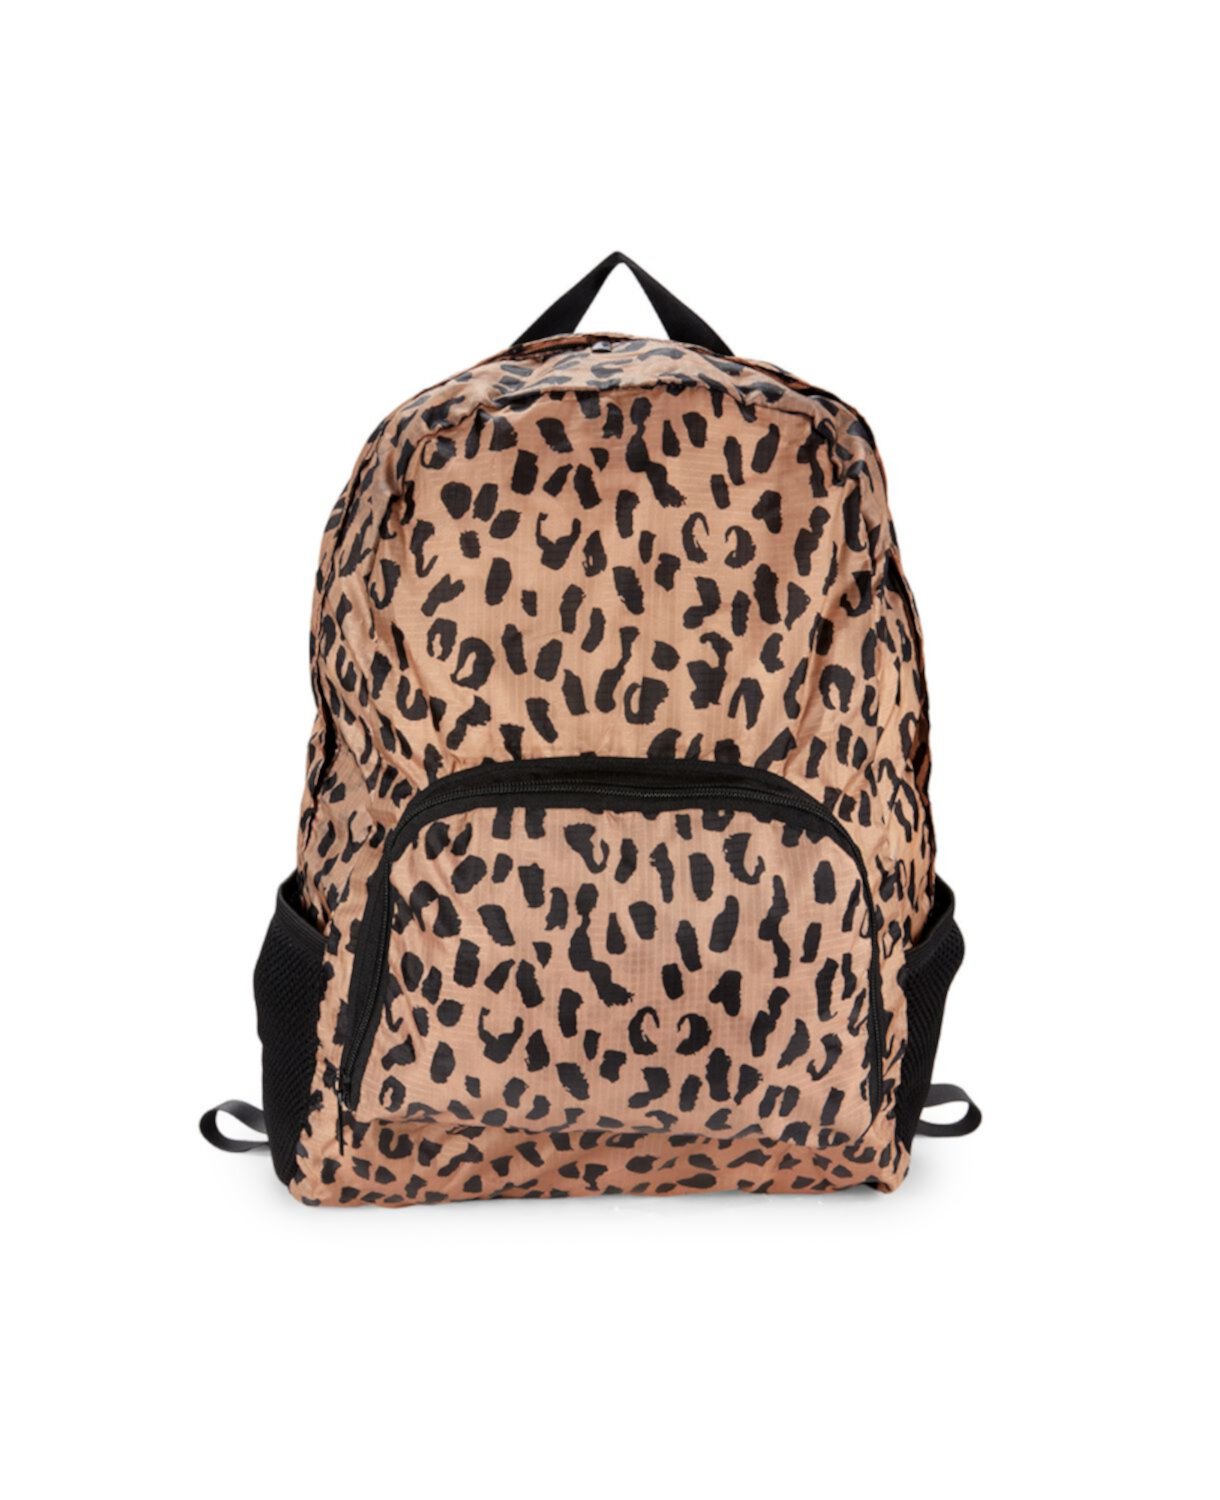 Складной рюкзак с леопардовым принтом MYTAGALONGS